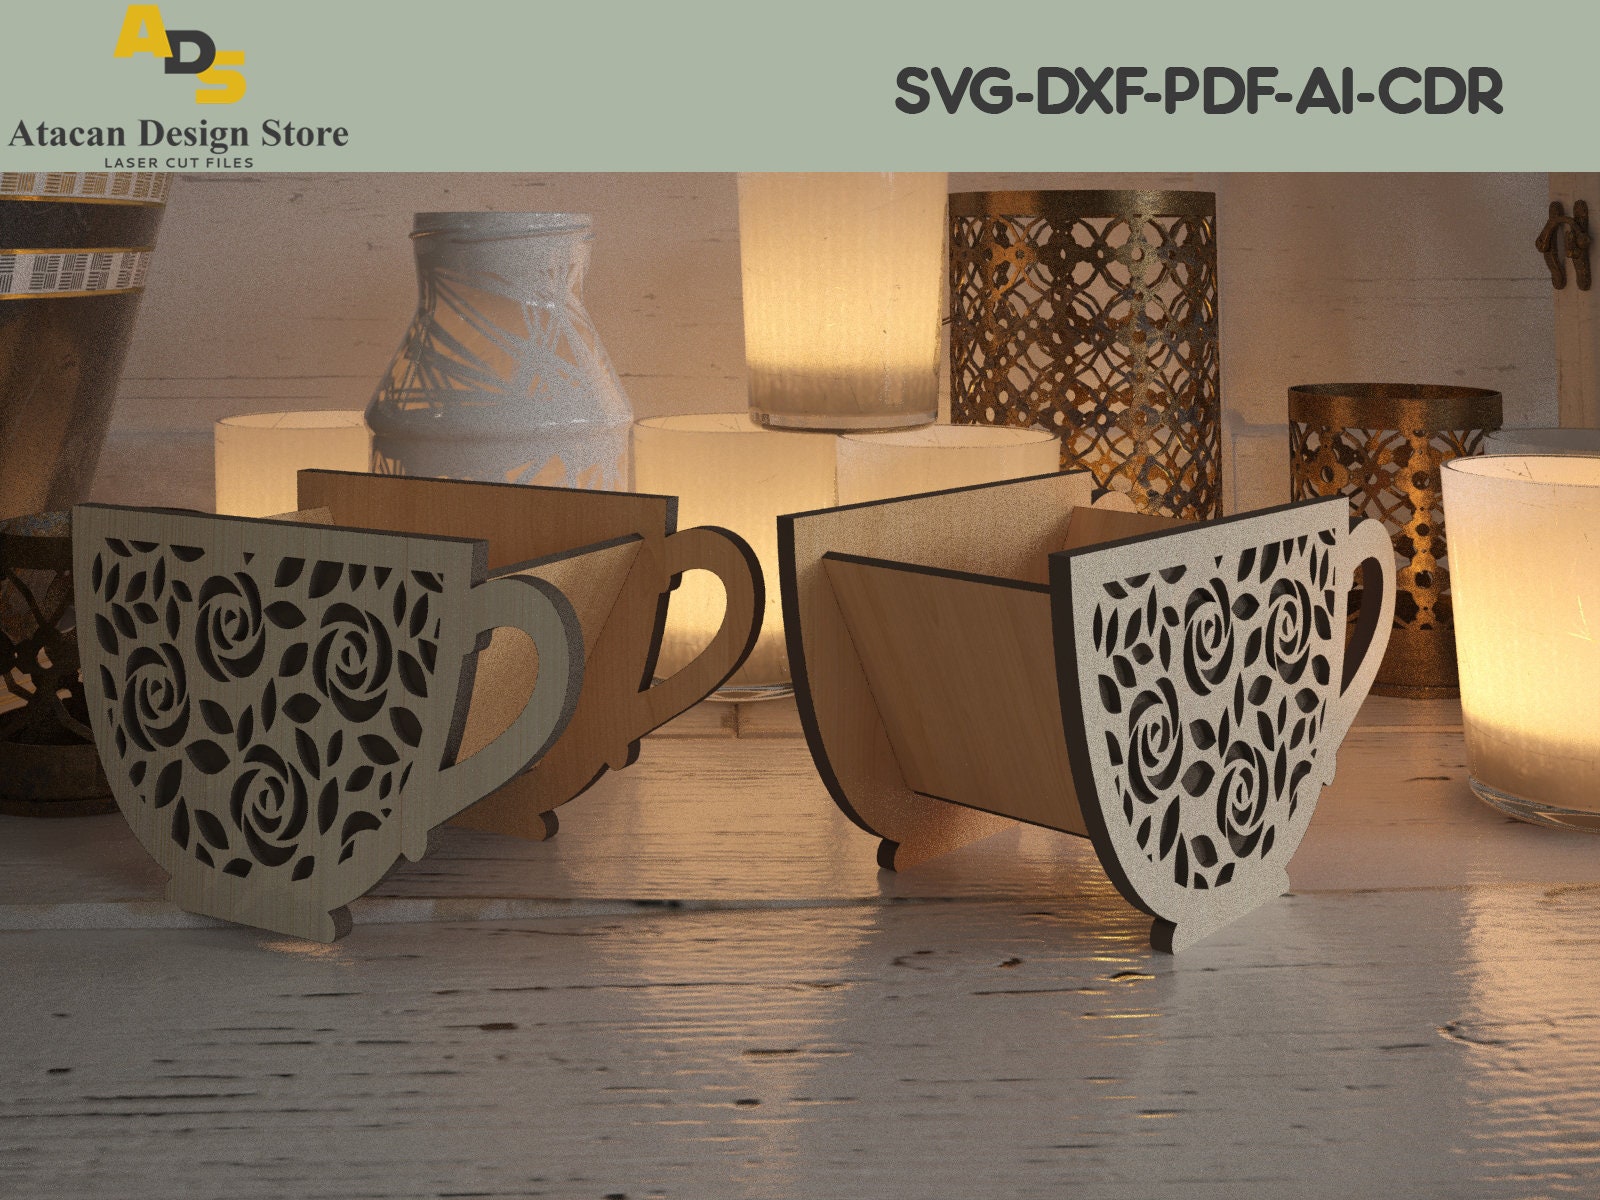 Initial Coffee Mug Design 1 Single – Lara Laser Works